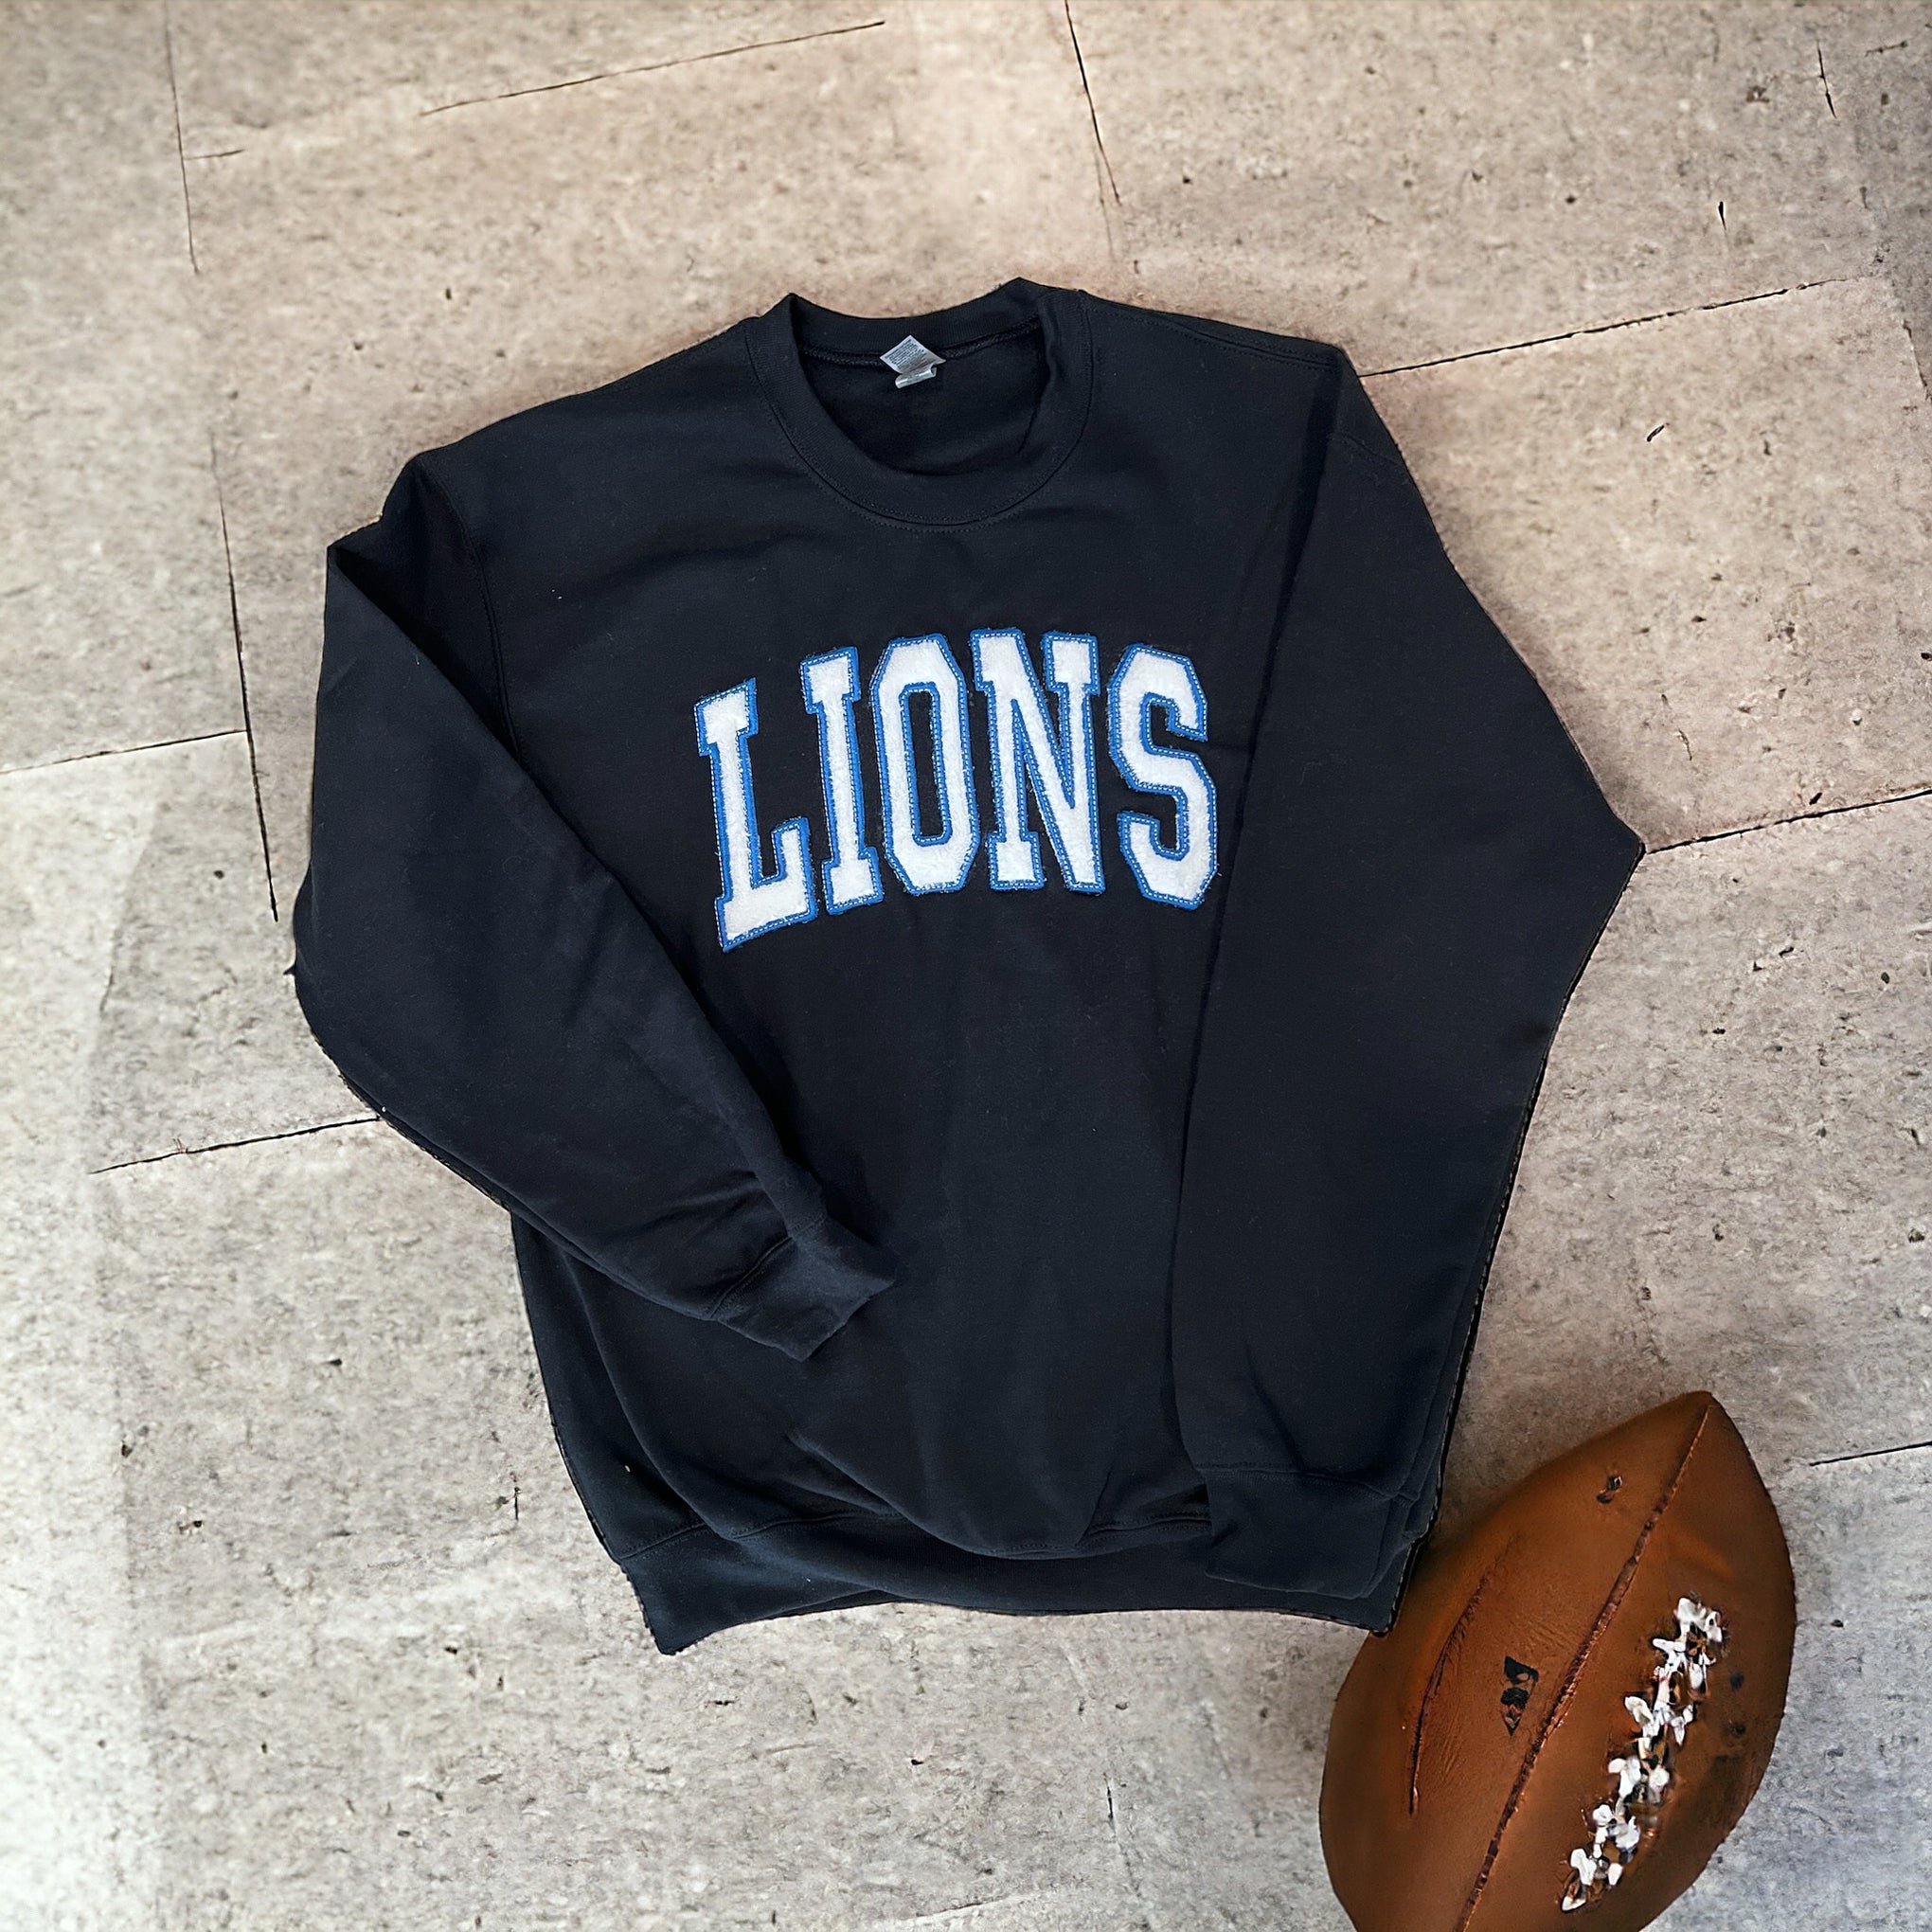 Detroit Lions varsity look, crew neck sweatshirt